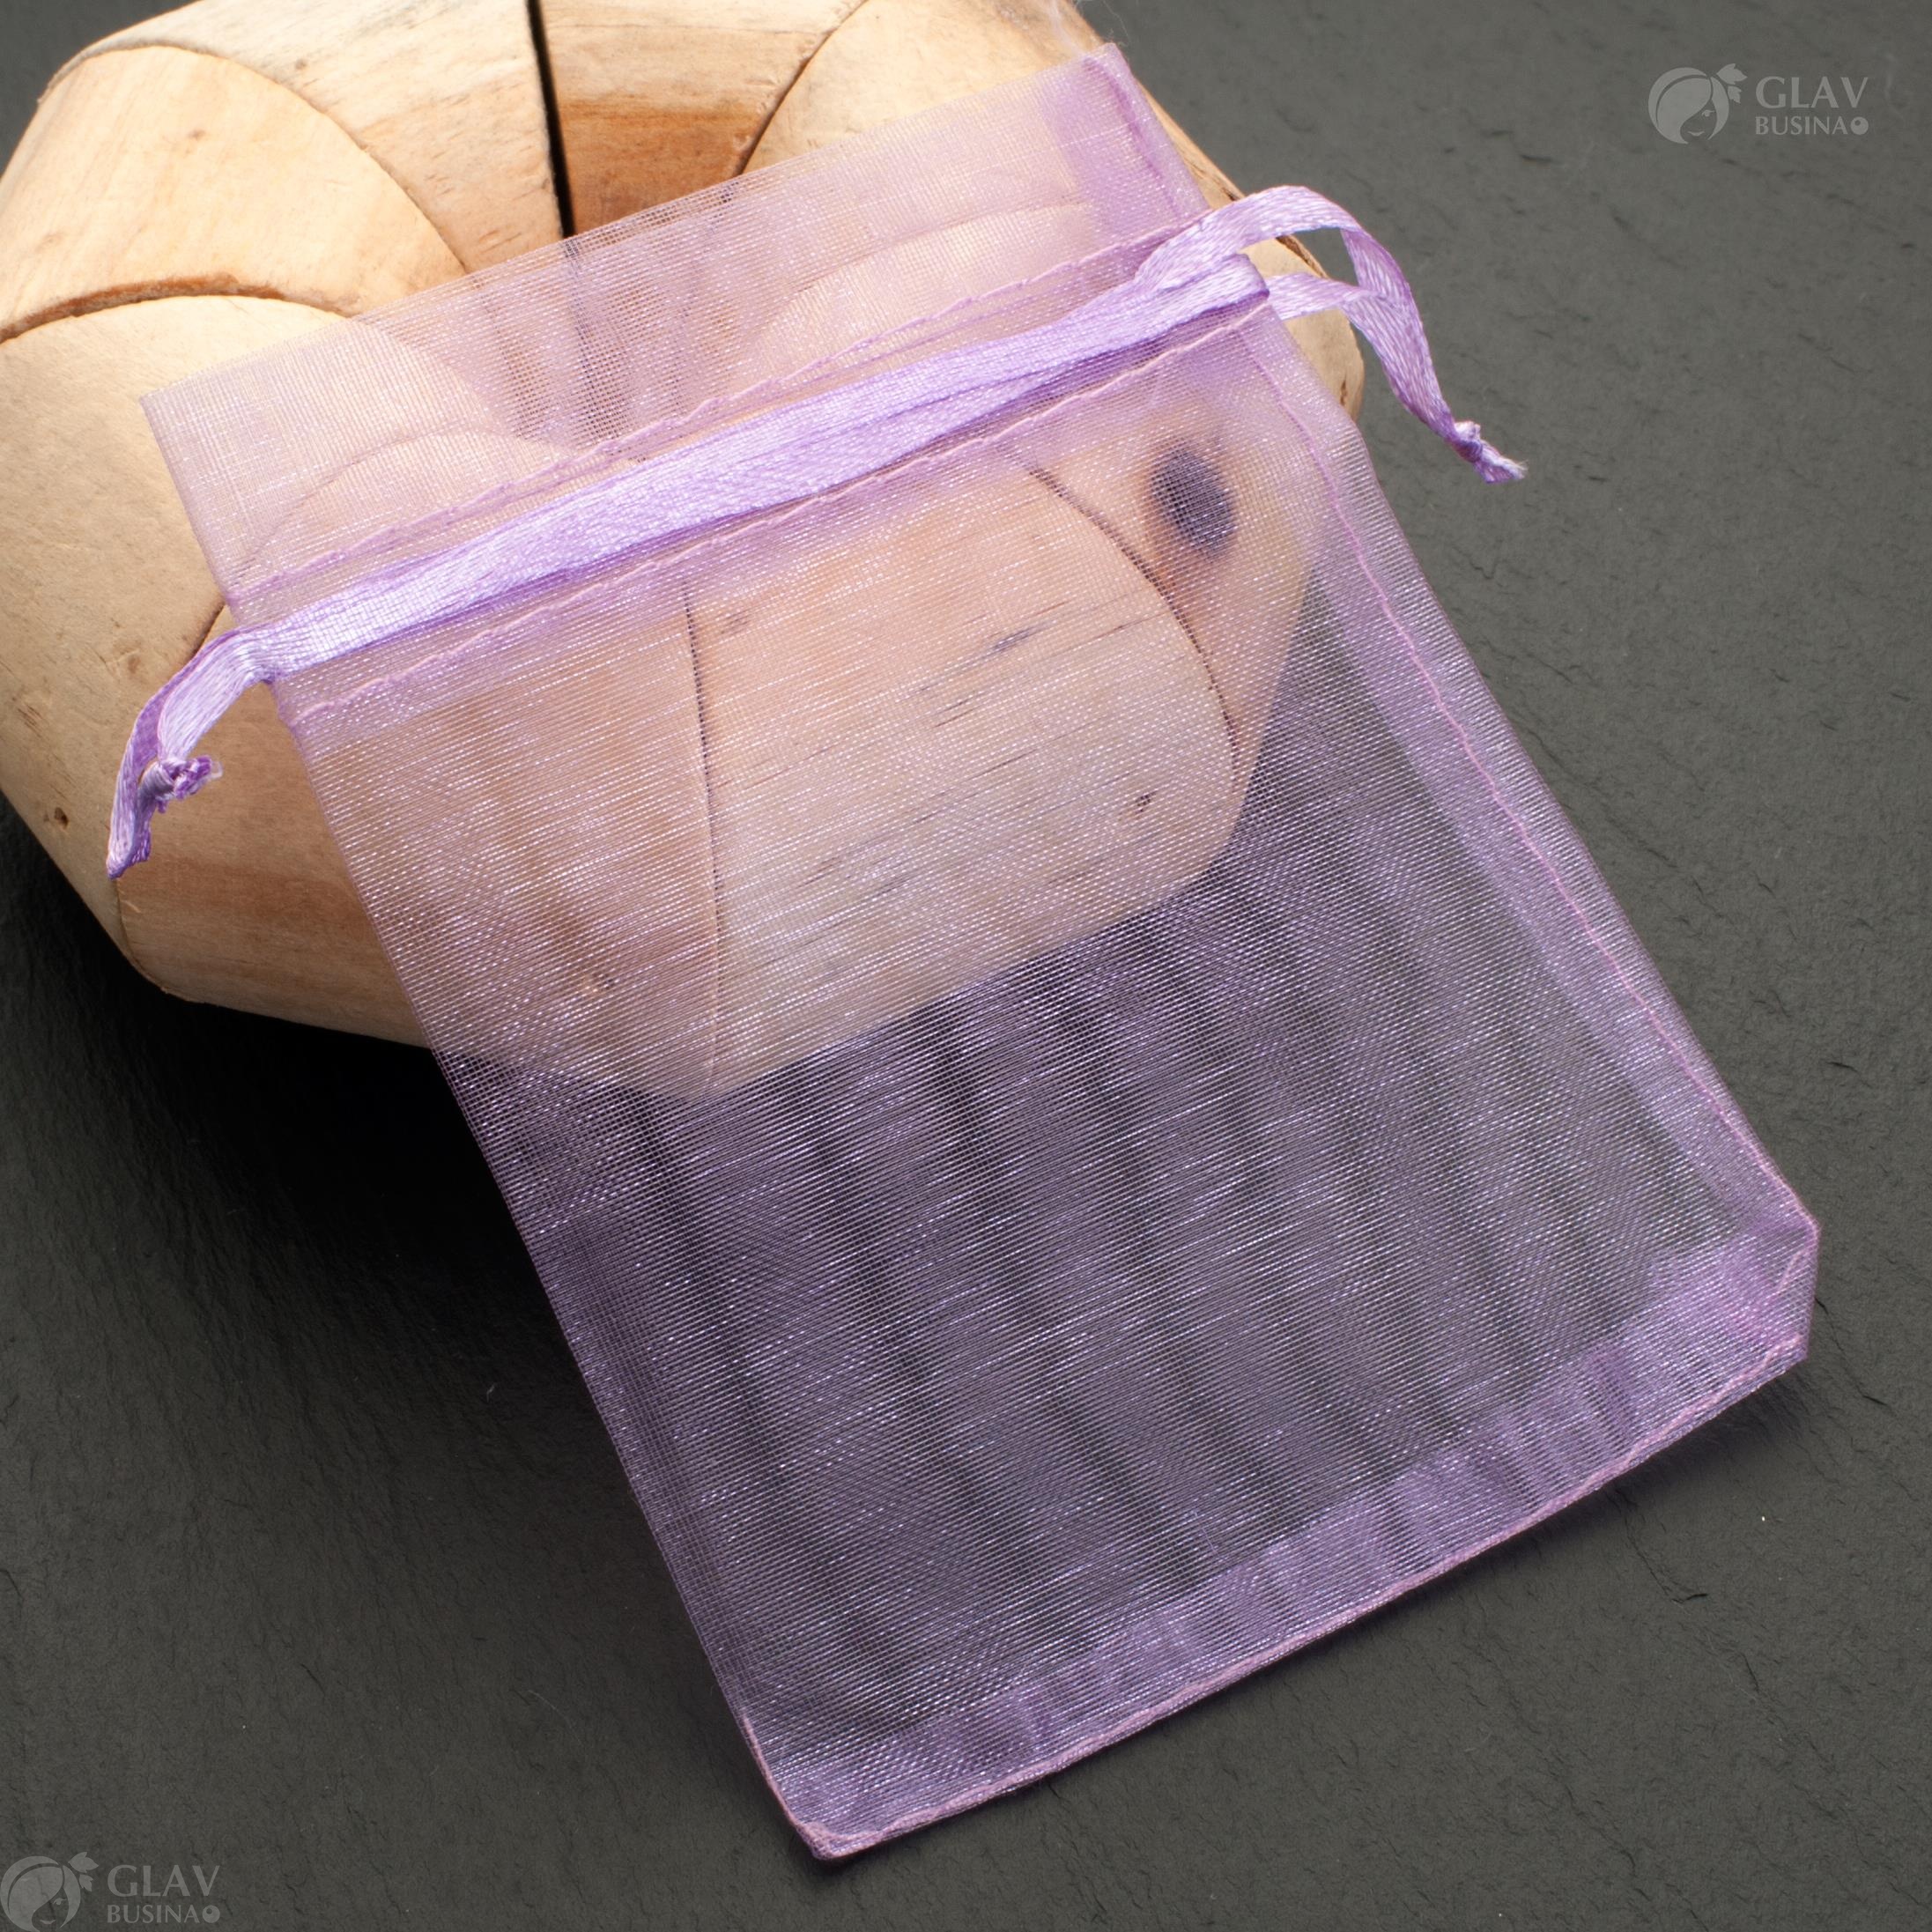 Сиреневые мешочки из органзы с элегантной ленточкой, размером 9х12 см, идеальны для упаковки подарков или украшений.